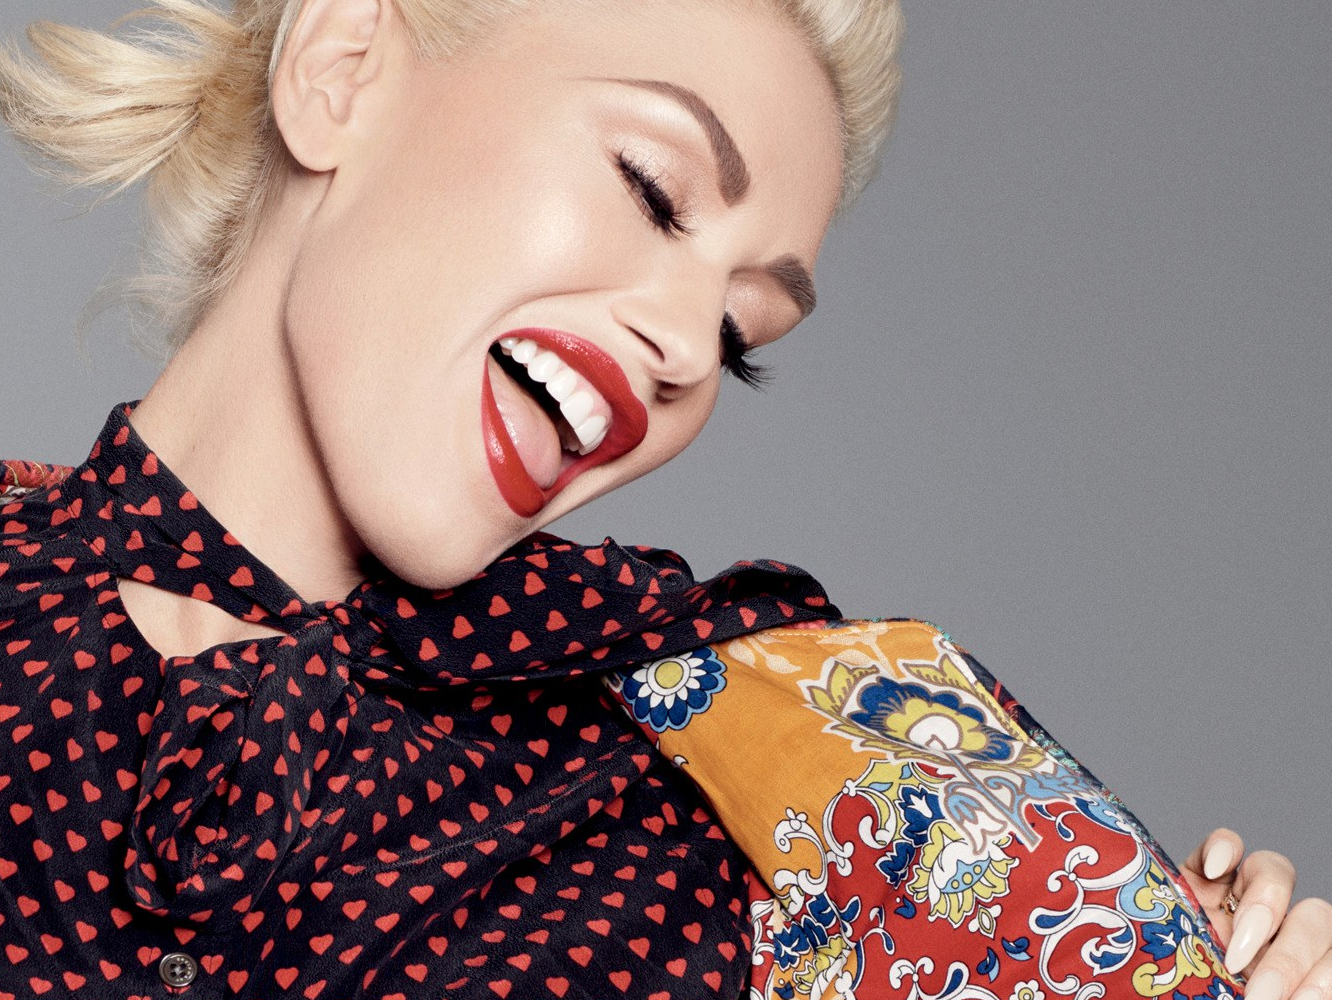  Gwen Stefani confirma su show en Las Vegas, que arrancará en junio